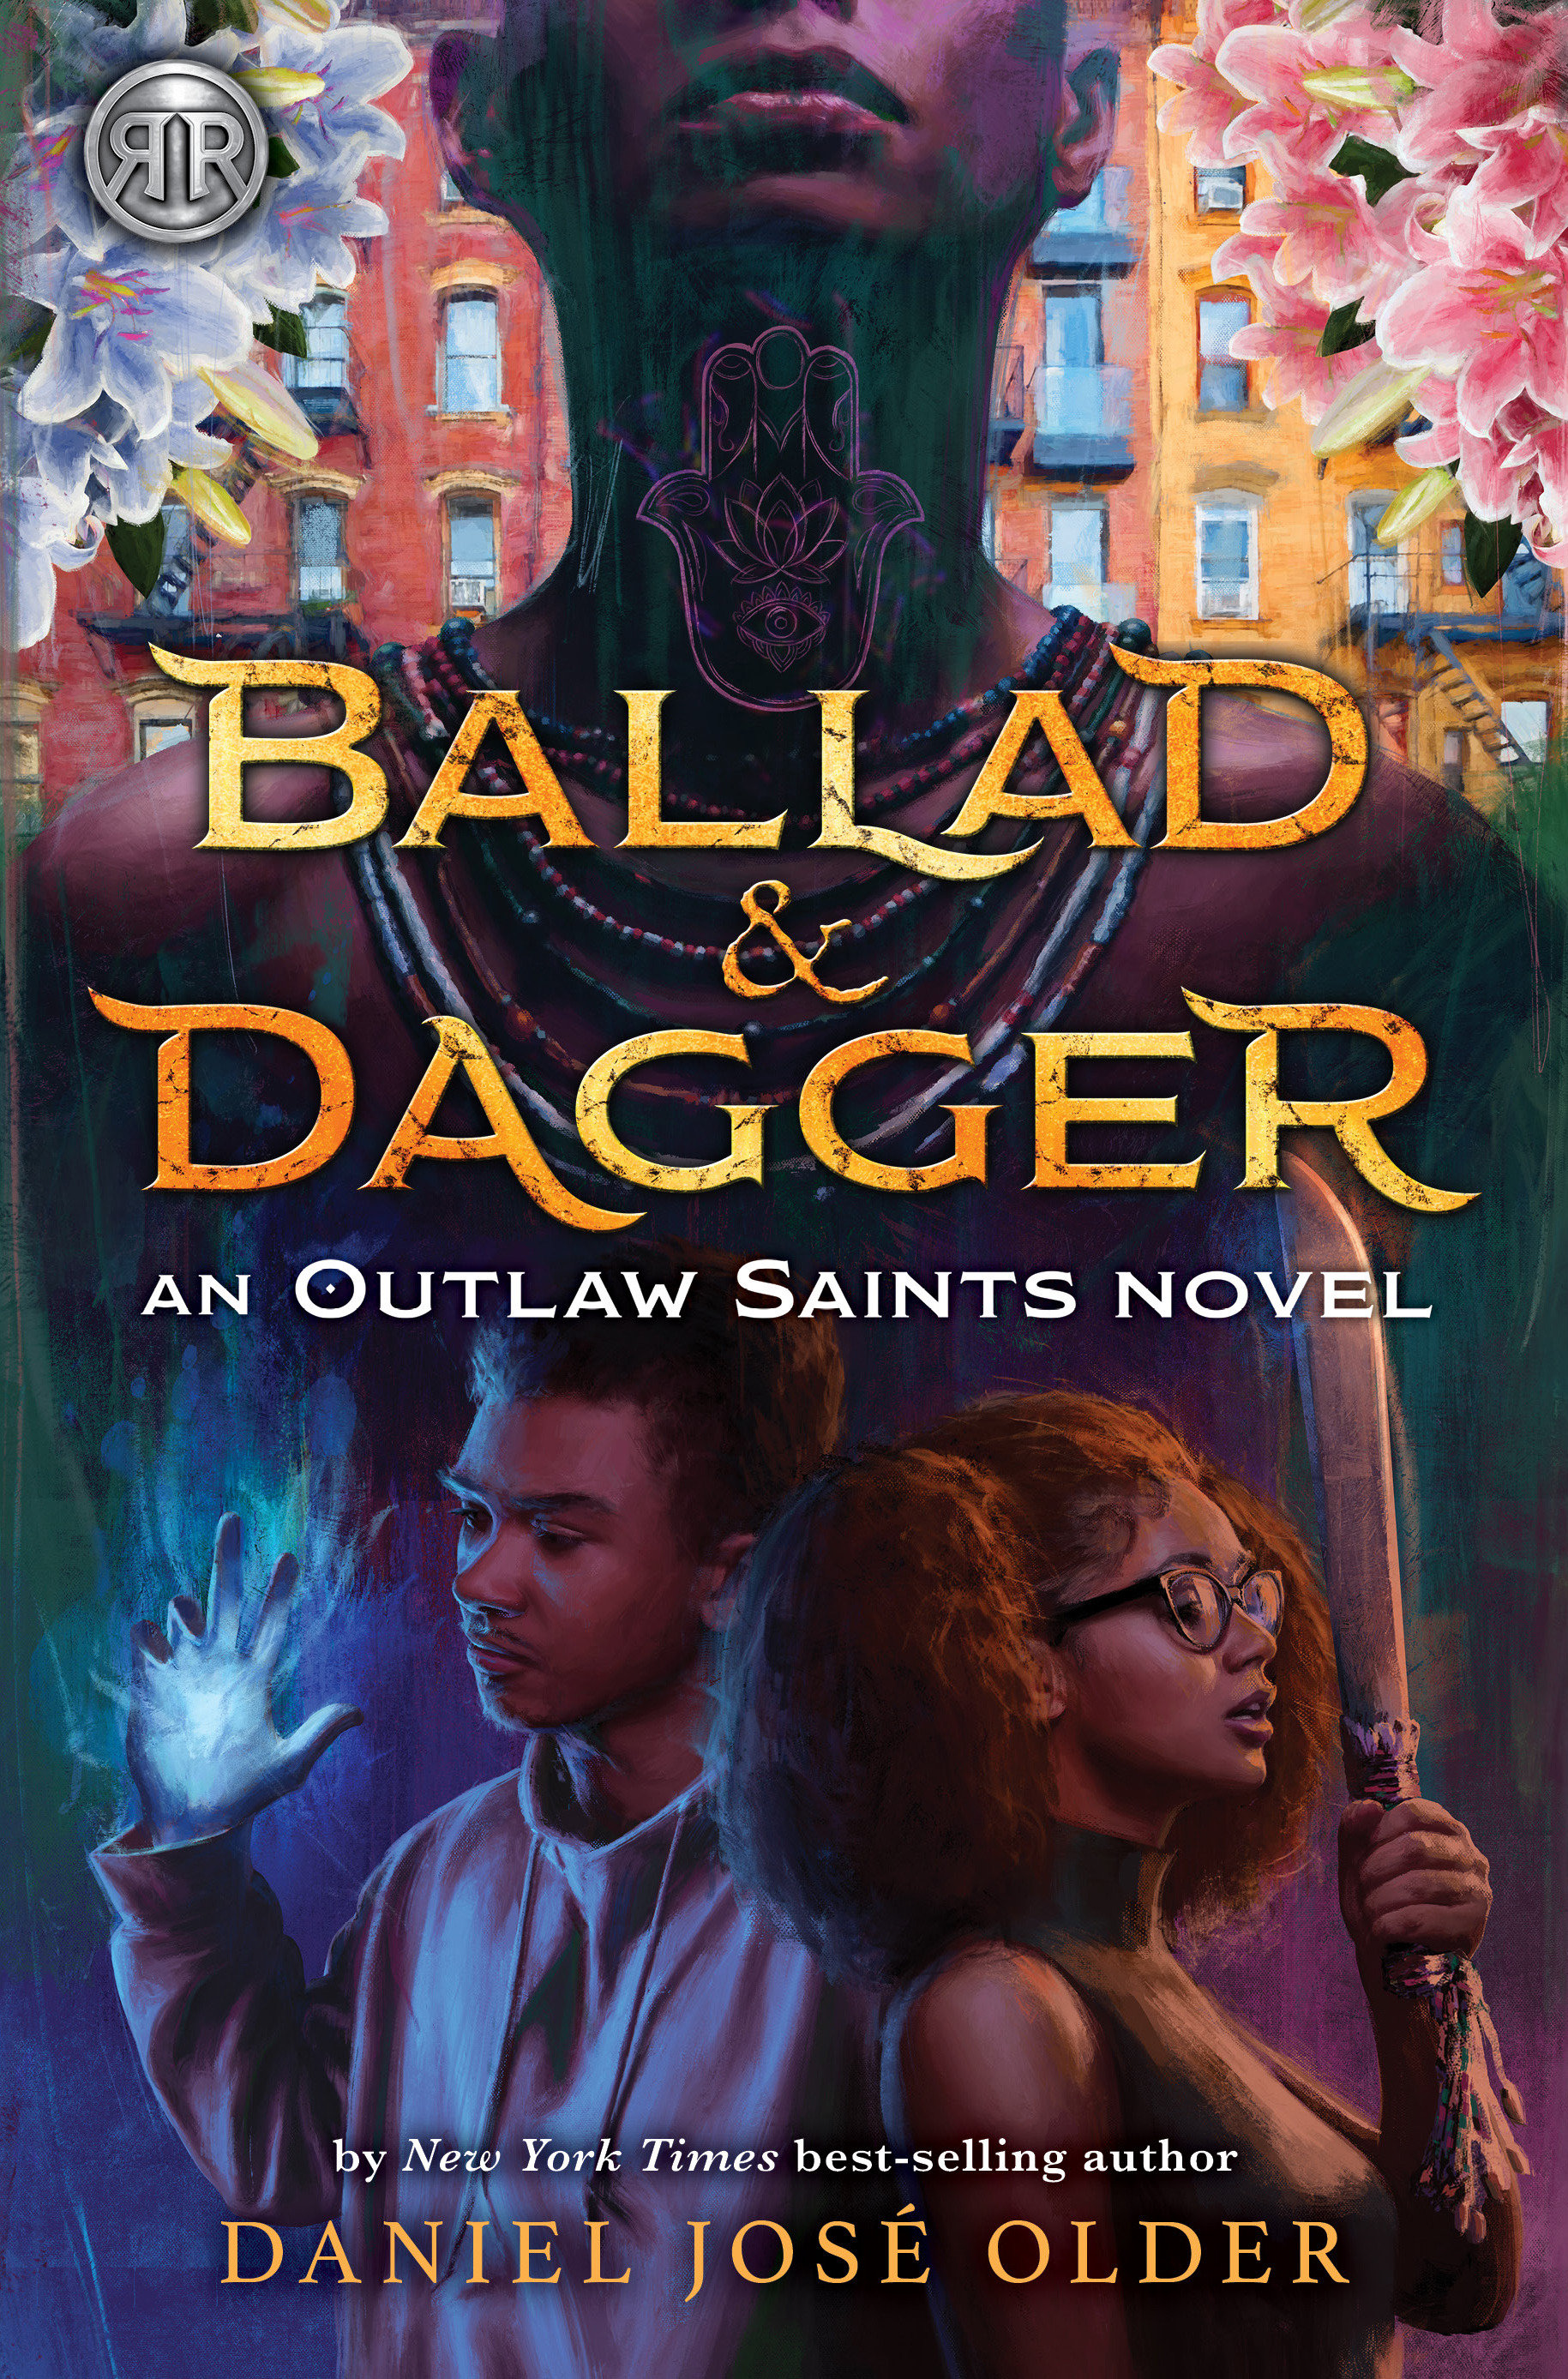 Rick Riordan Presents: Ballad & Dagger-An Outlaw Saints Novel (Hardcover Book)